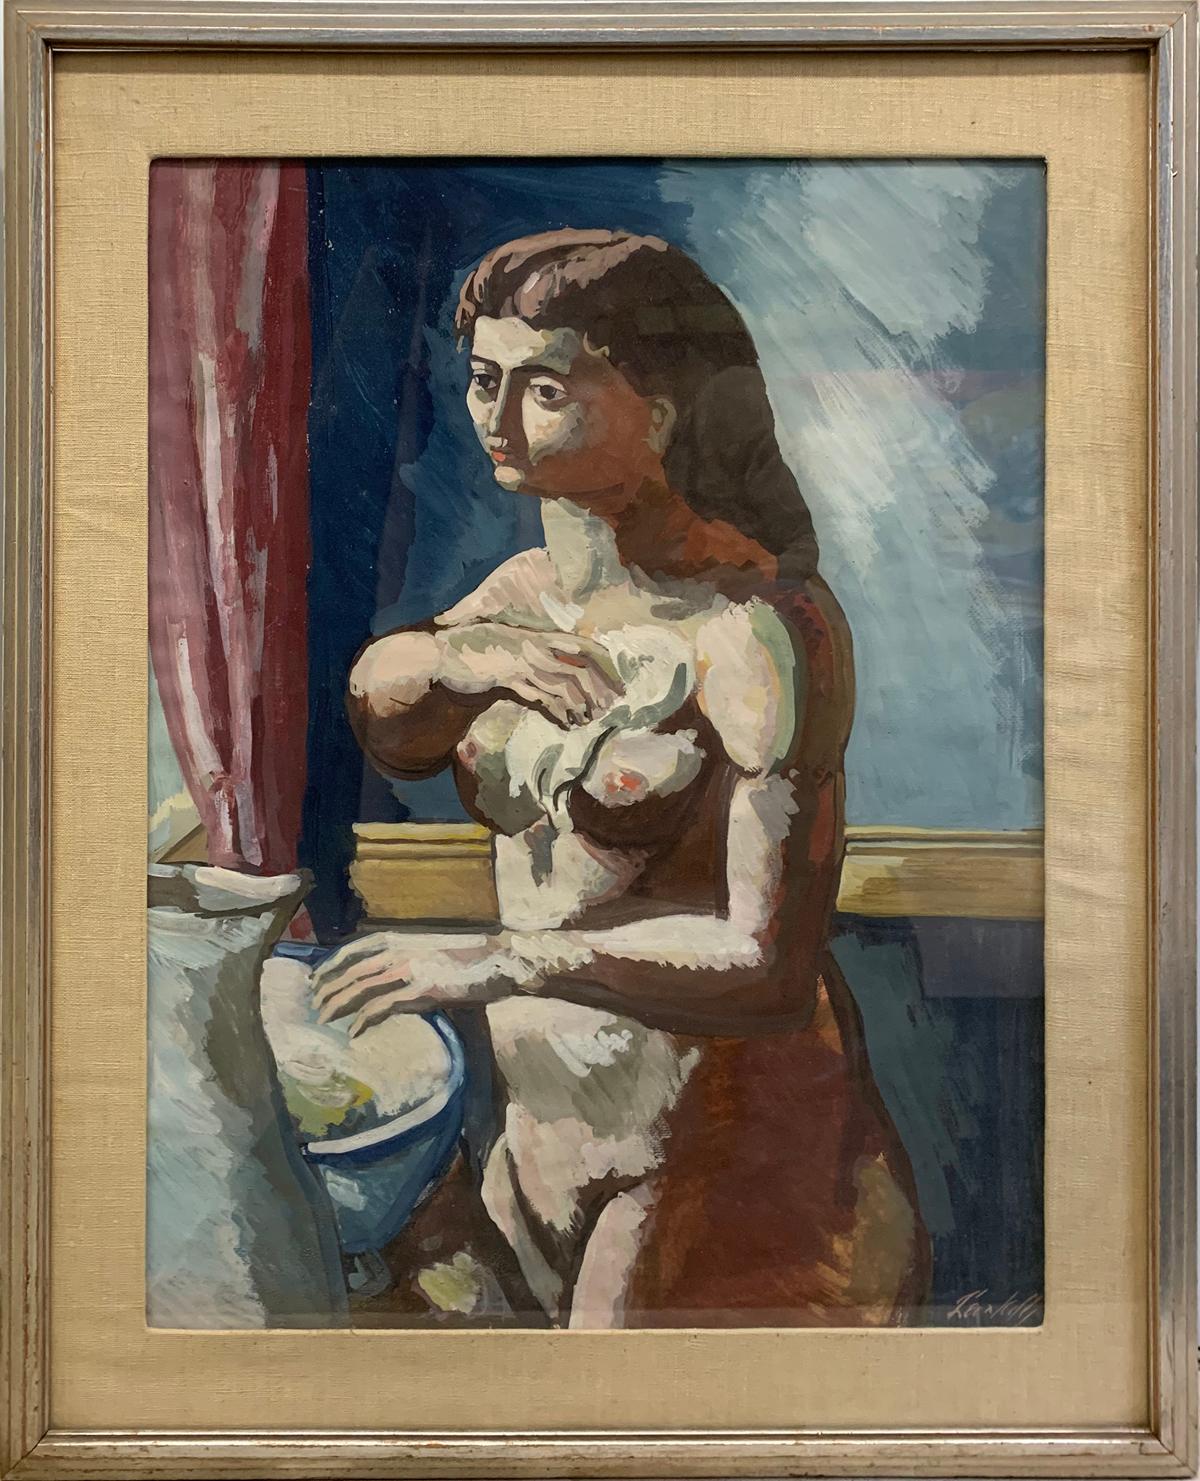 Woman at Basin, portrait d'une femme nue de style Picasso, moderniste américain - Painting de Leon Kelly